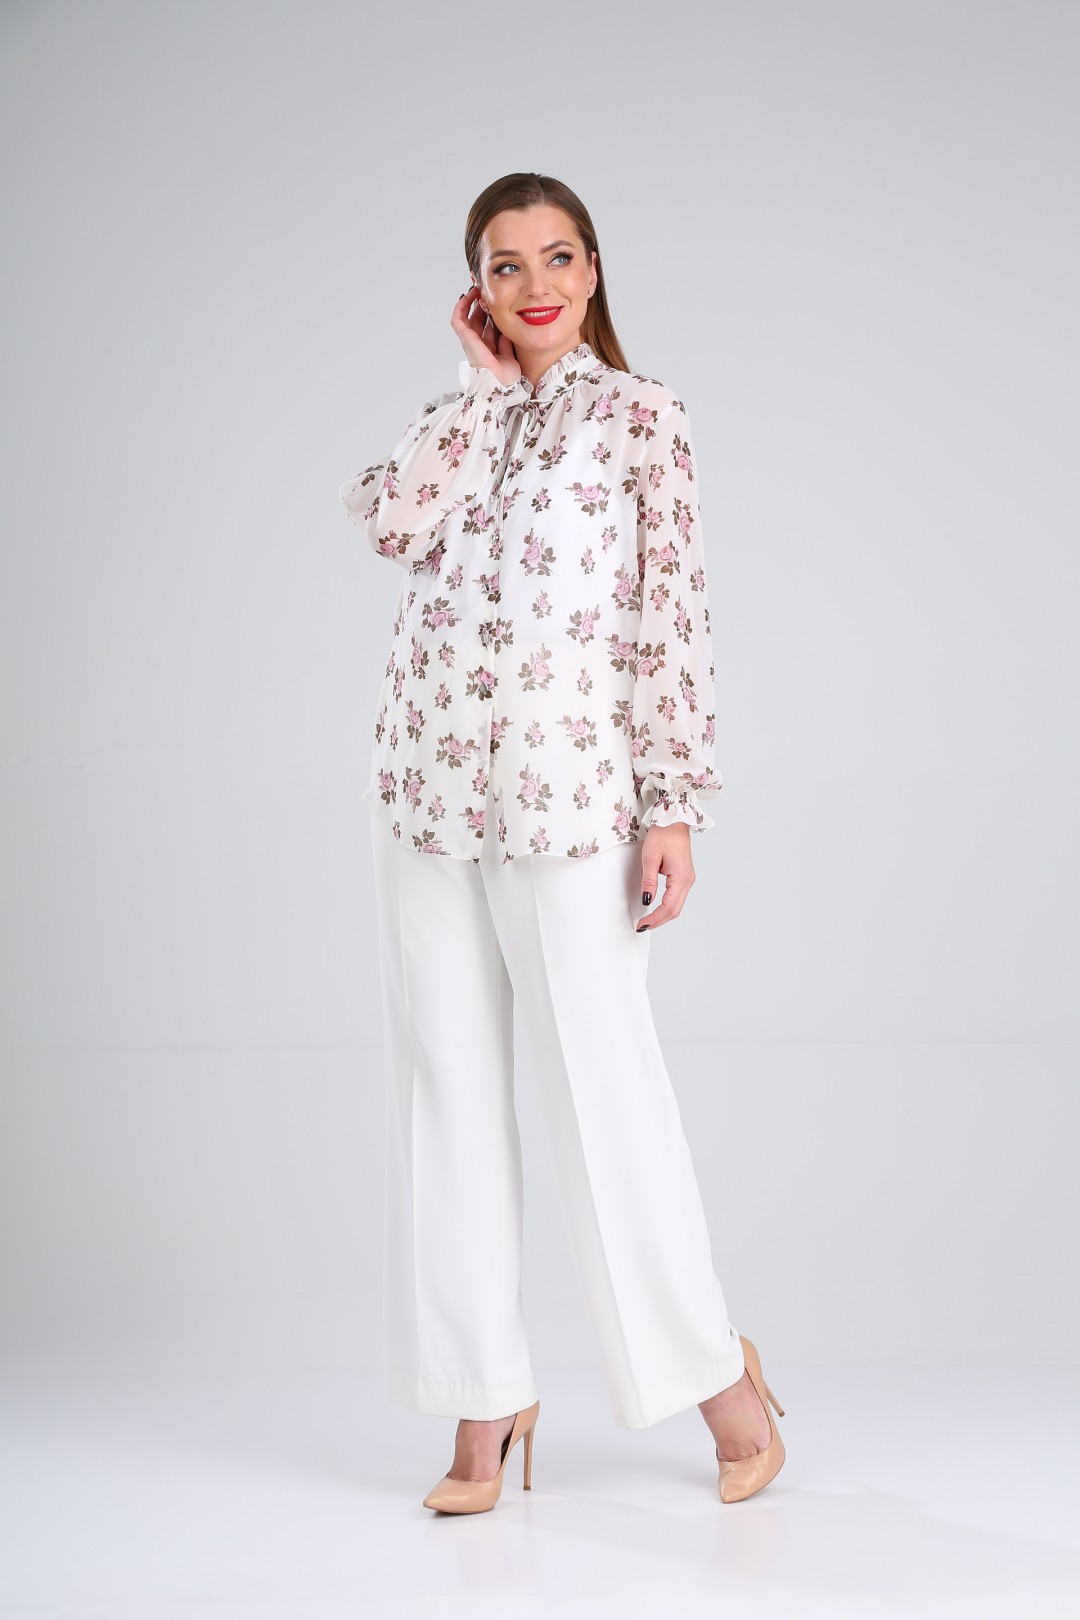 Блузка LadyLine 503 белая в розовые цветы